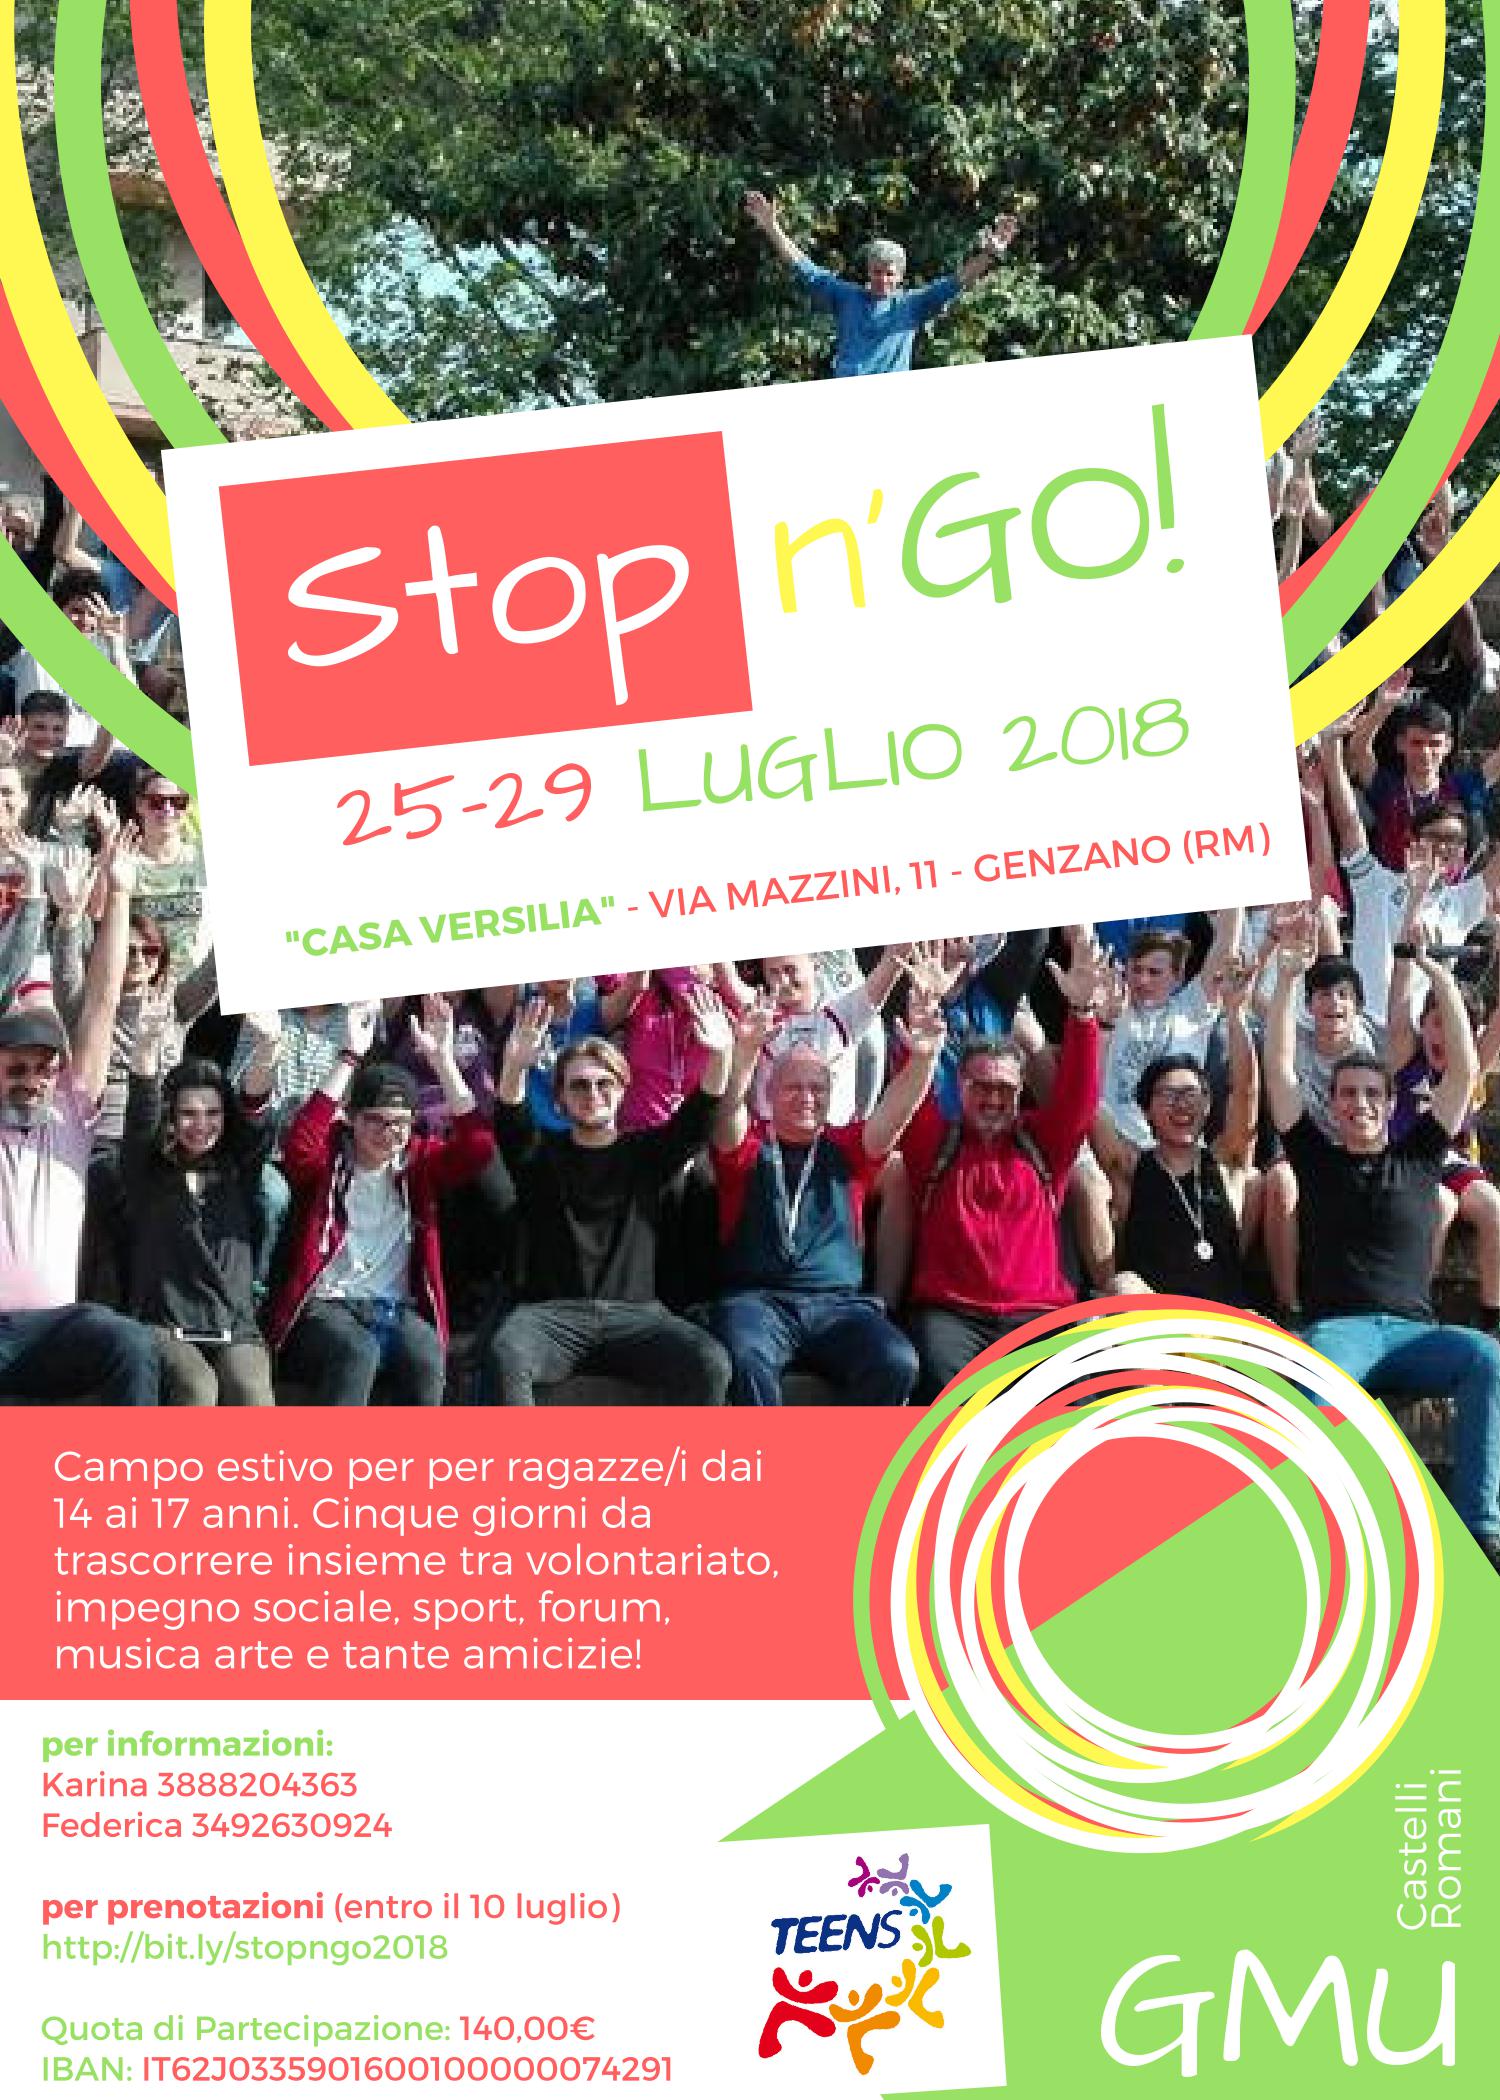 Stop 'n go - Appuntamento estivo per ragazzi a Genzano